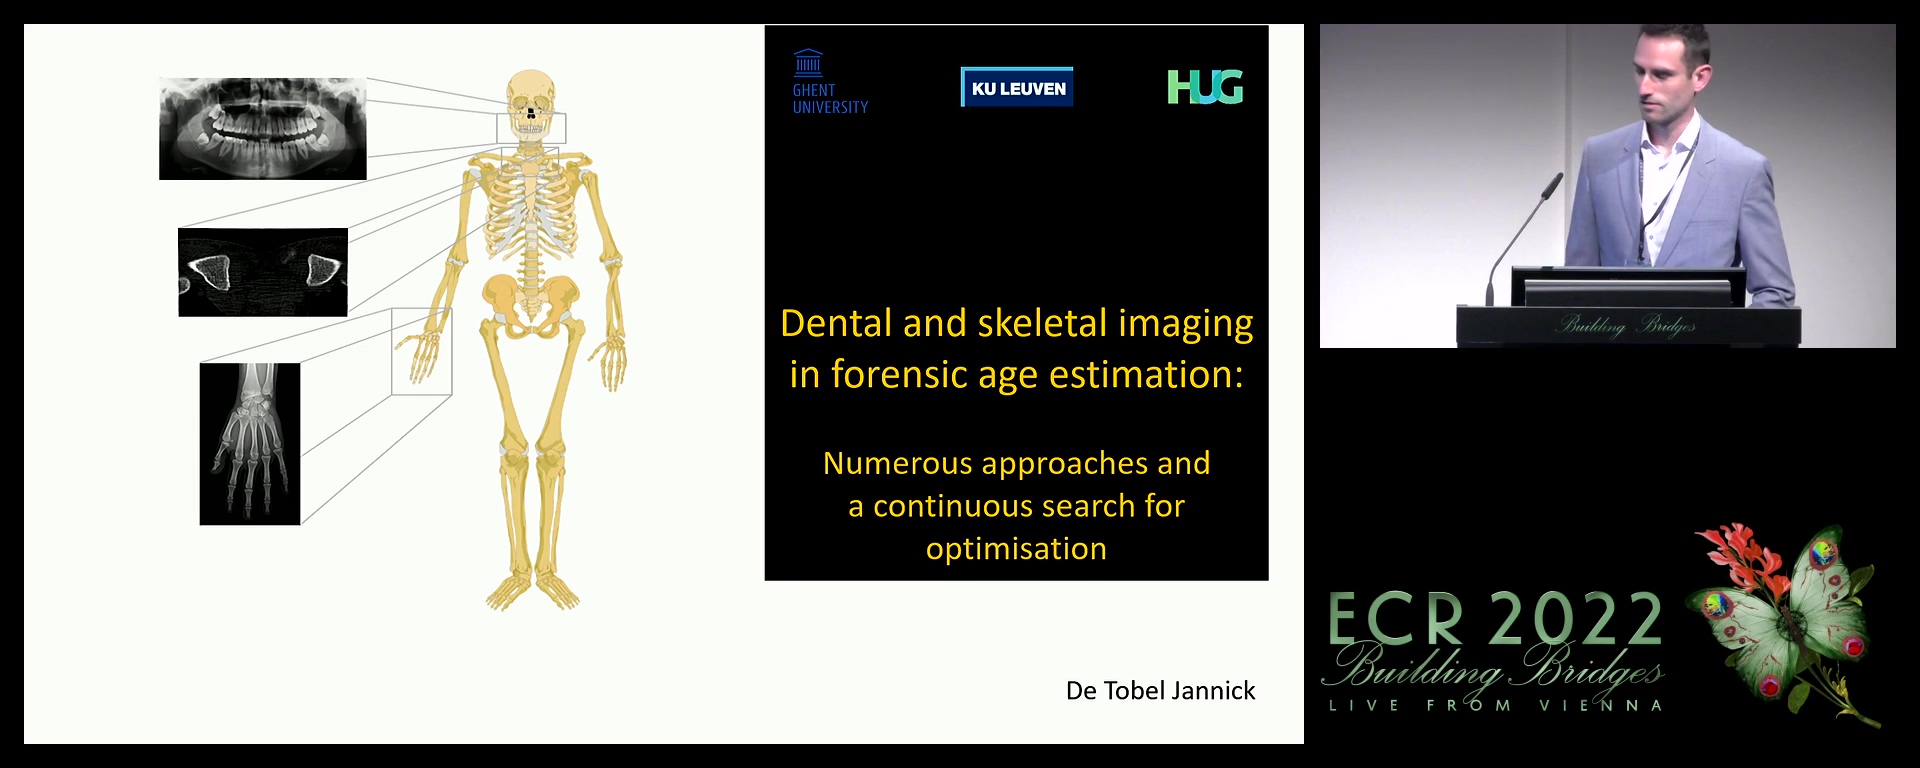 Dental and skeletal imaging in forensic age estimation